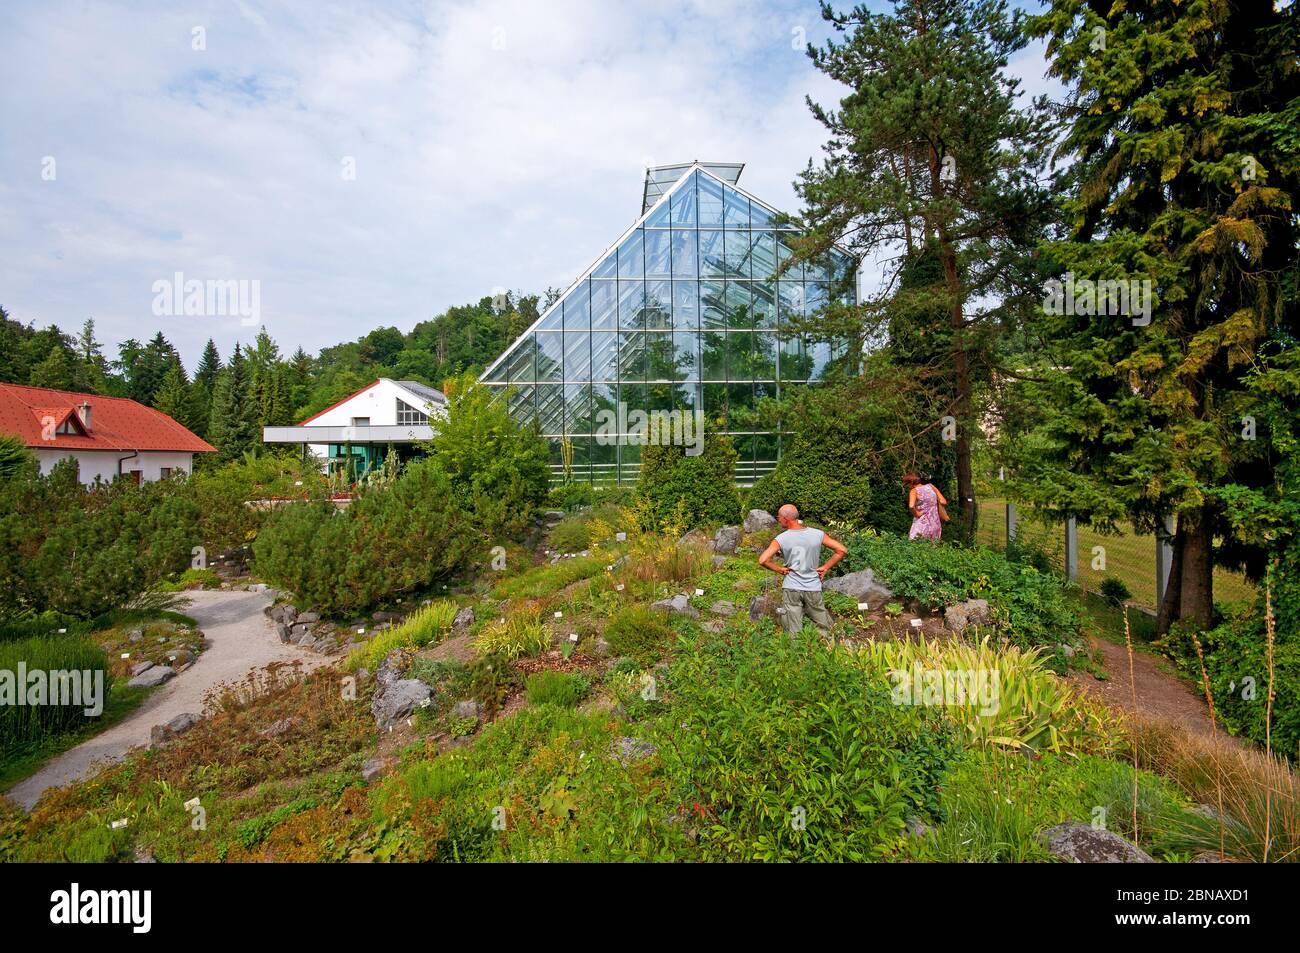 Botanischer Garten und Gewächshaus für tropische Pflanzen, Ljubljana,  Slowenien Stockfotografie - Alamy